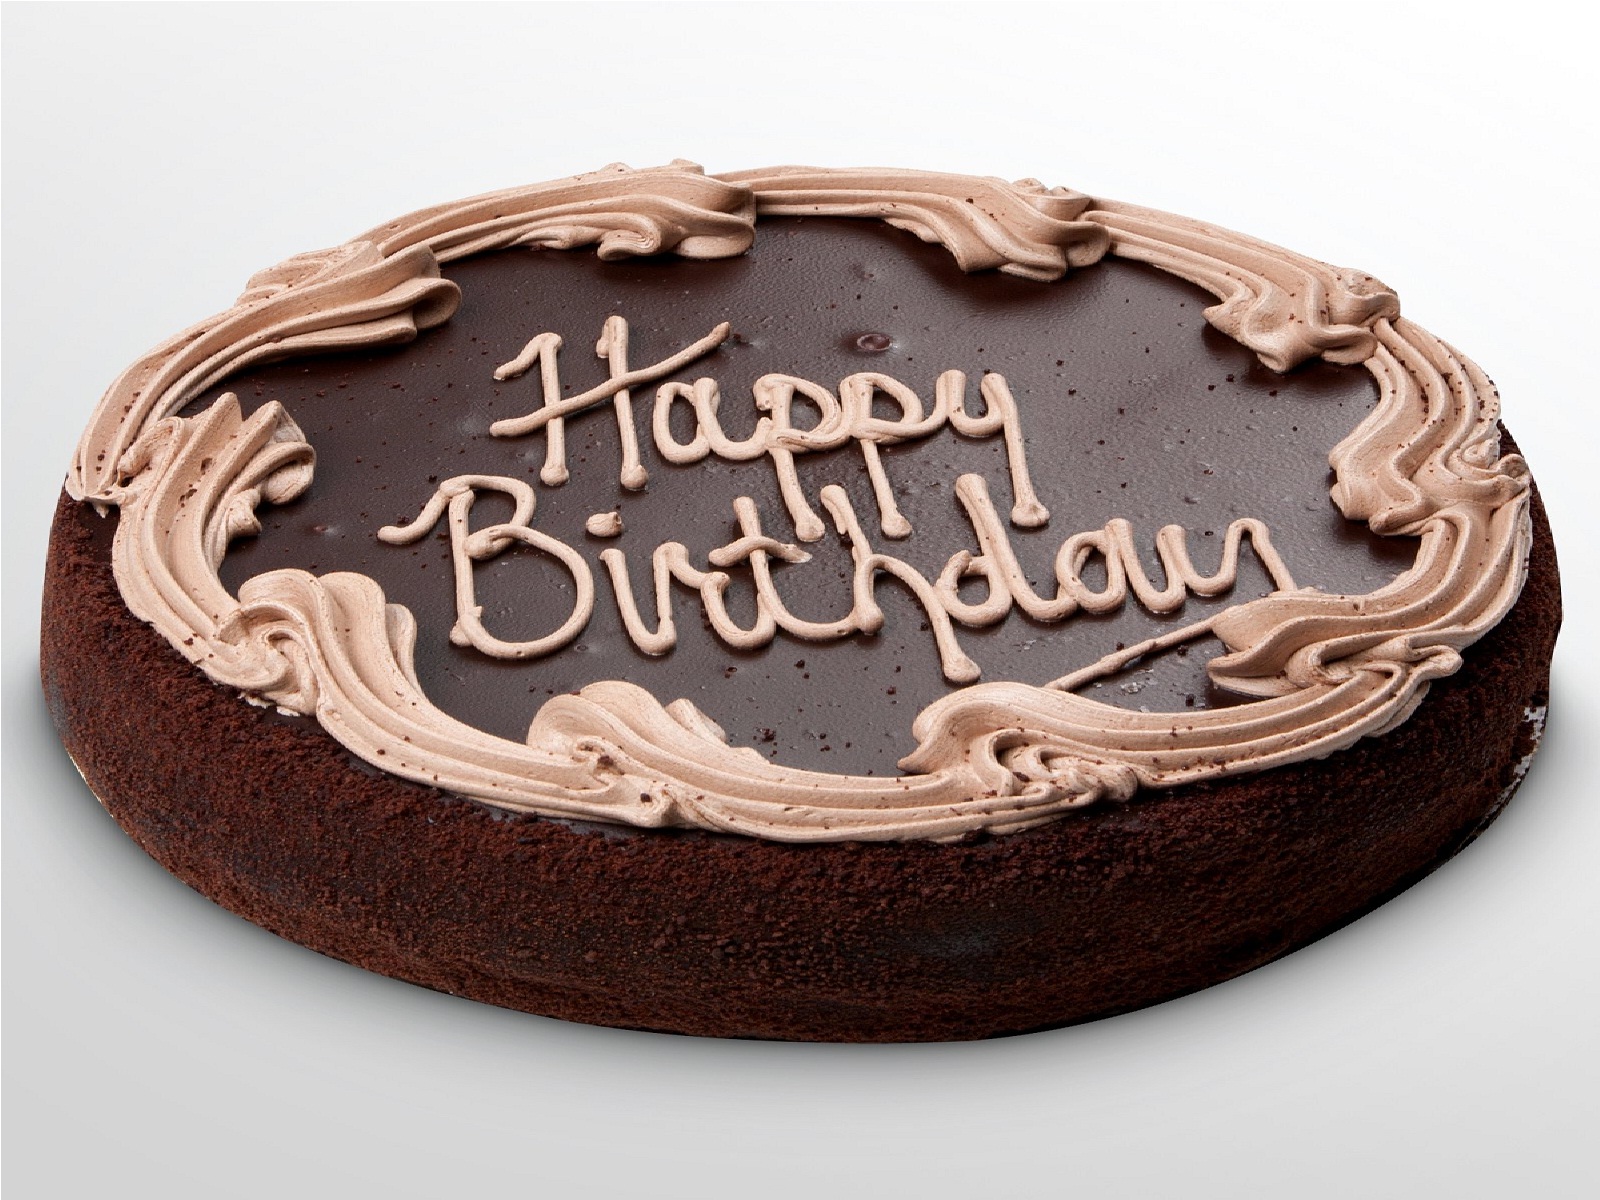 Wish You Happy Birthday Chocolate Cake Whatapp Wish Pic